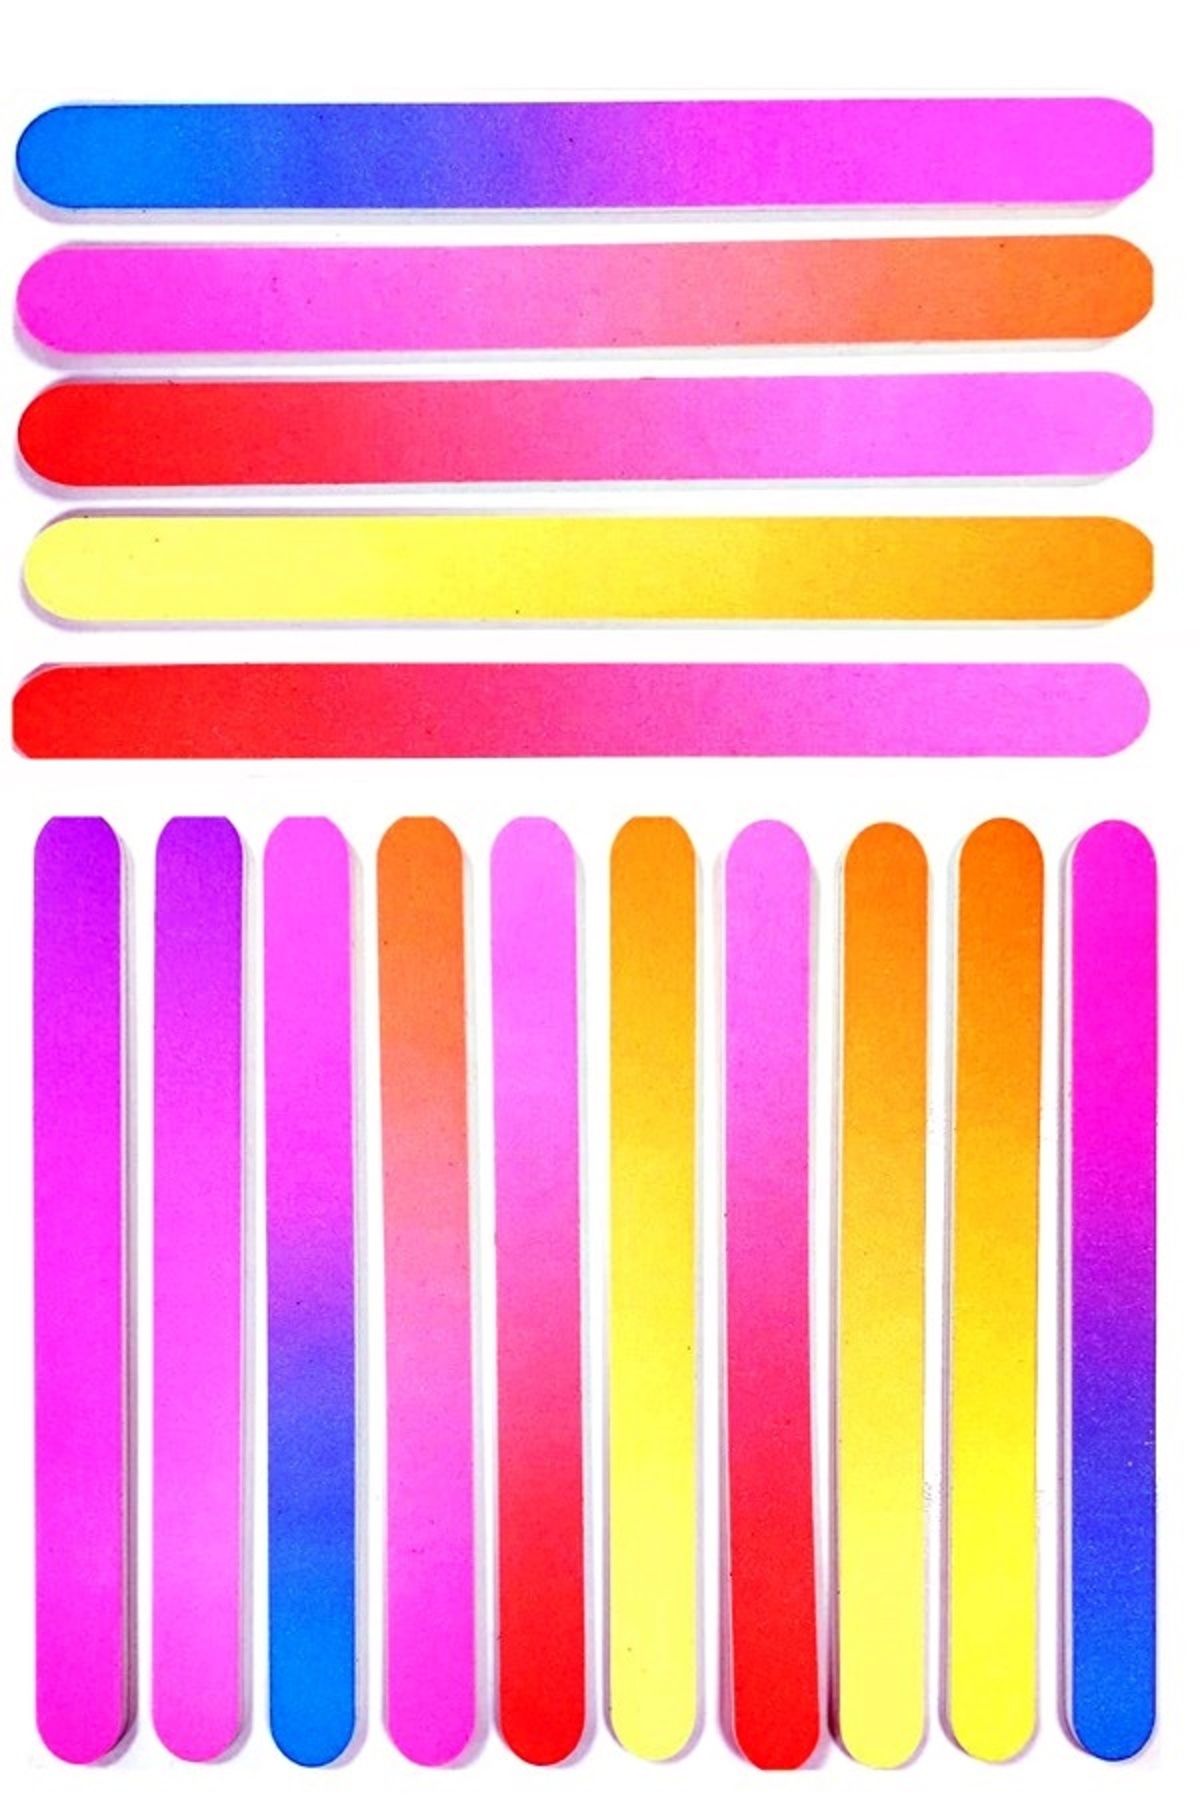 Xolo Çok Renkli Rainbow 10 Adet Çift Taraflı Protez Tırnak Normal Tırnak Törpüsü Kağıt Törpü